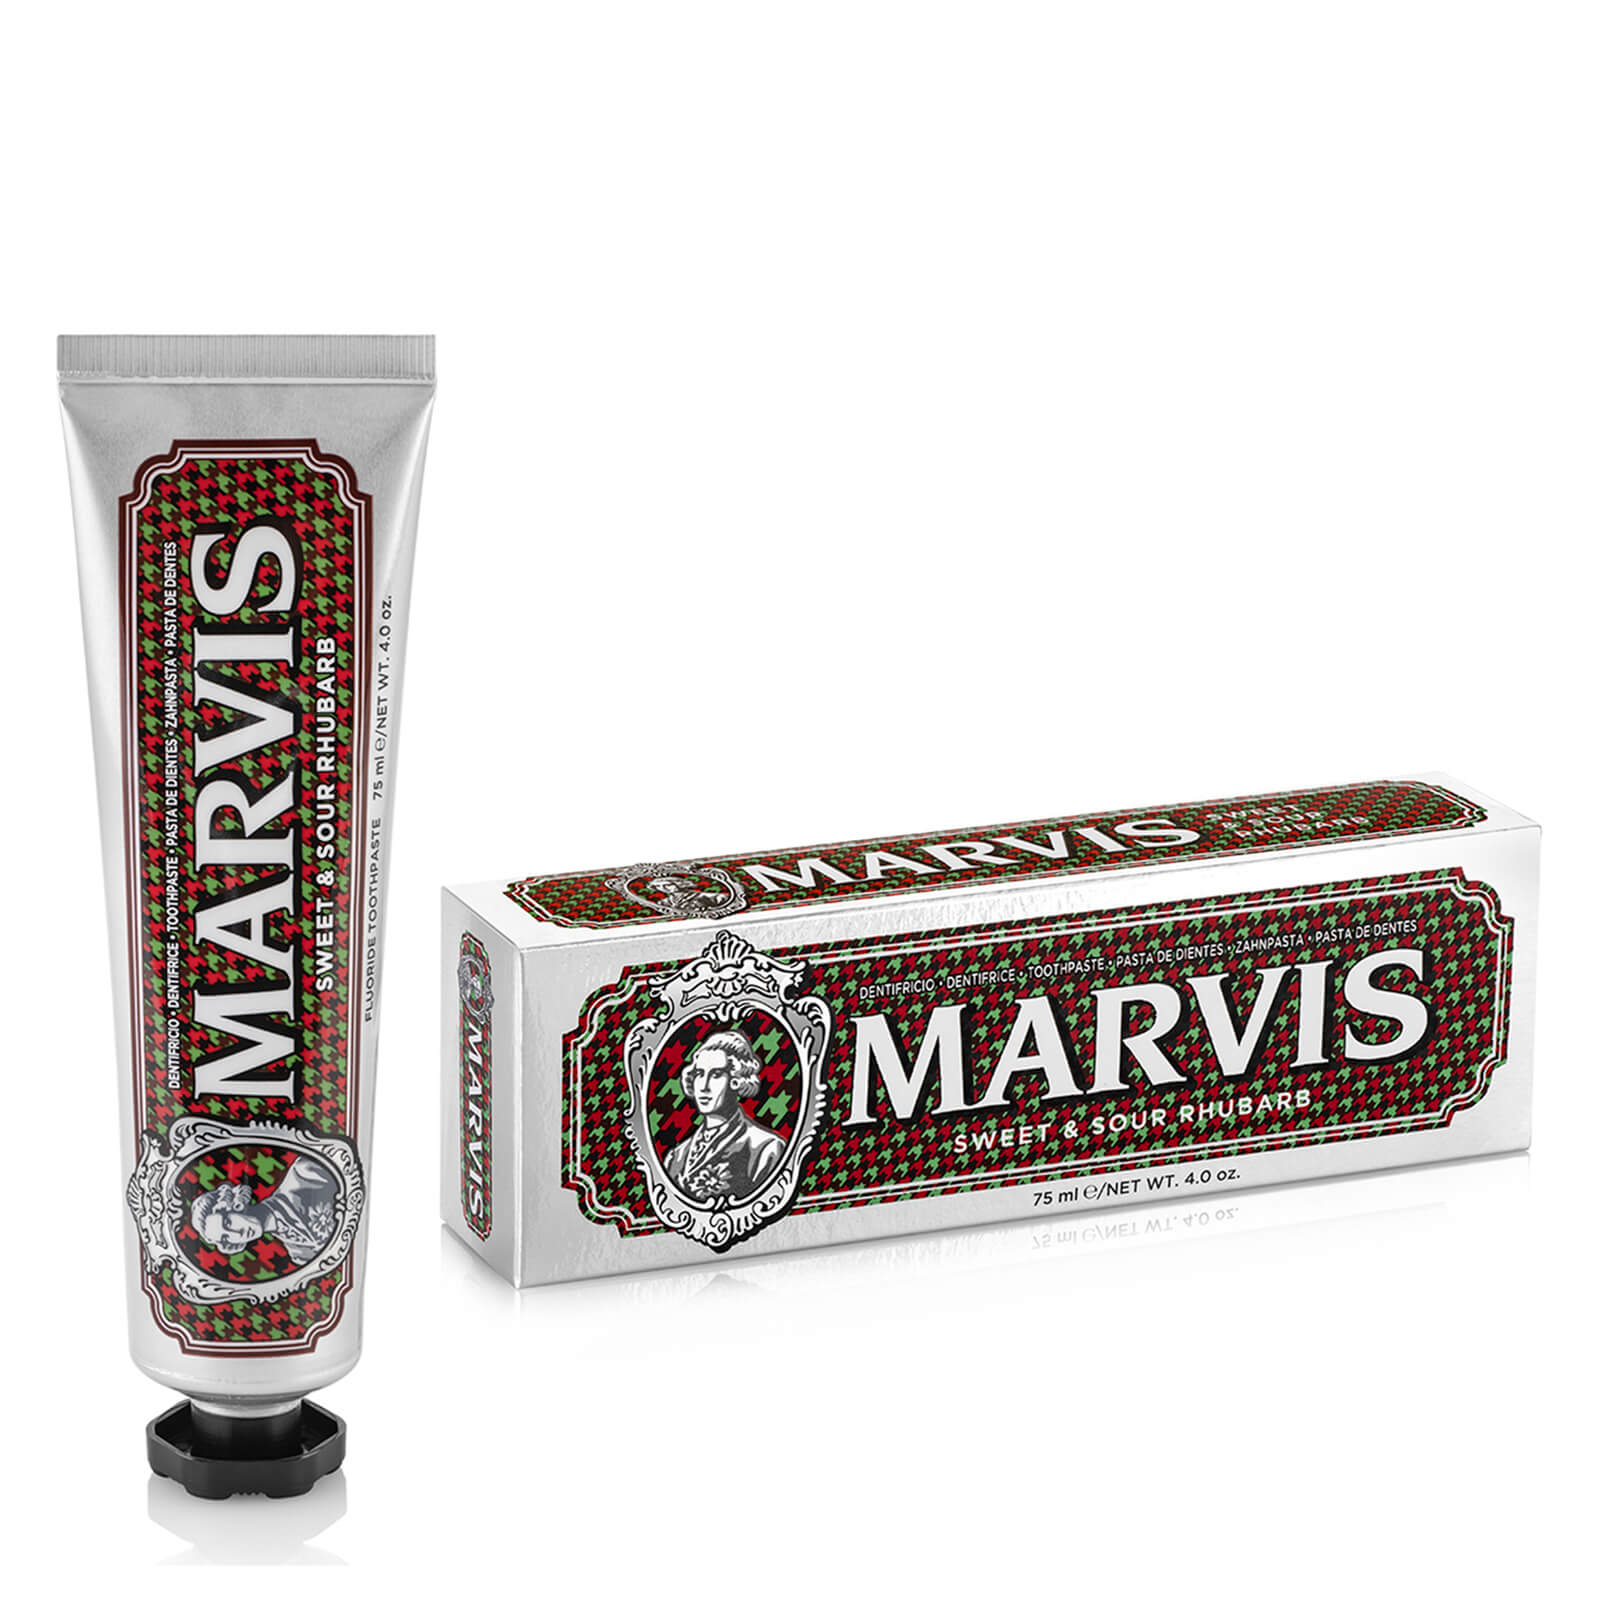 Marvis Sweet & Sour Rhubarb Toothpaste 75ml lookfantastic.com imagine